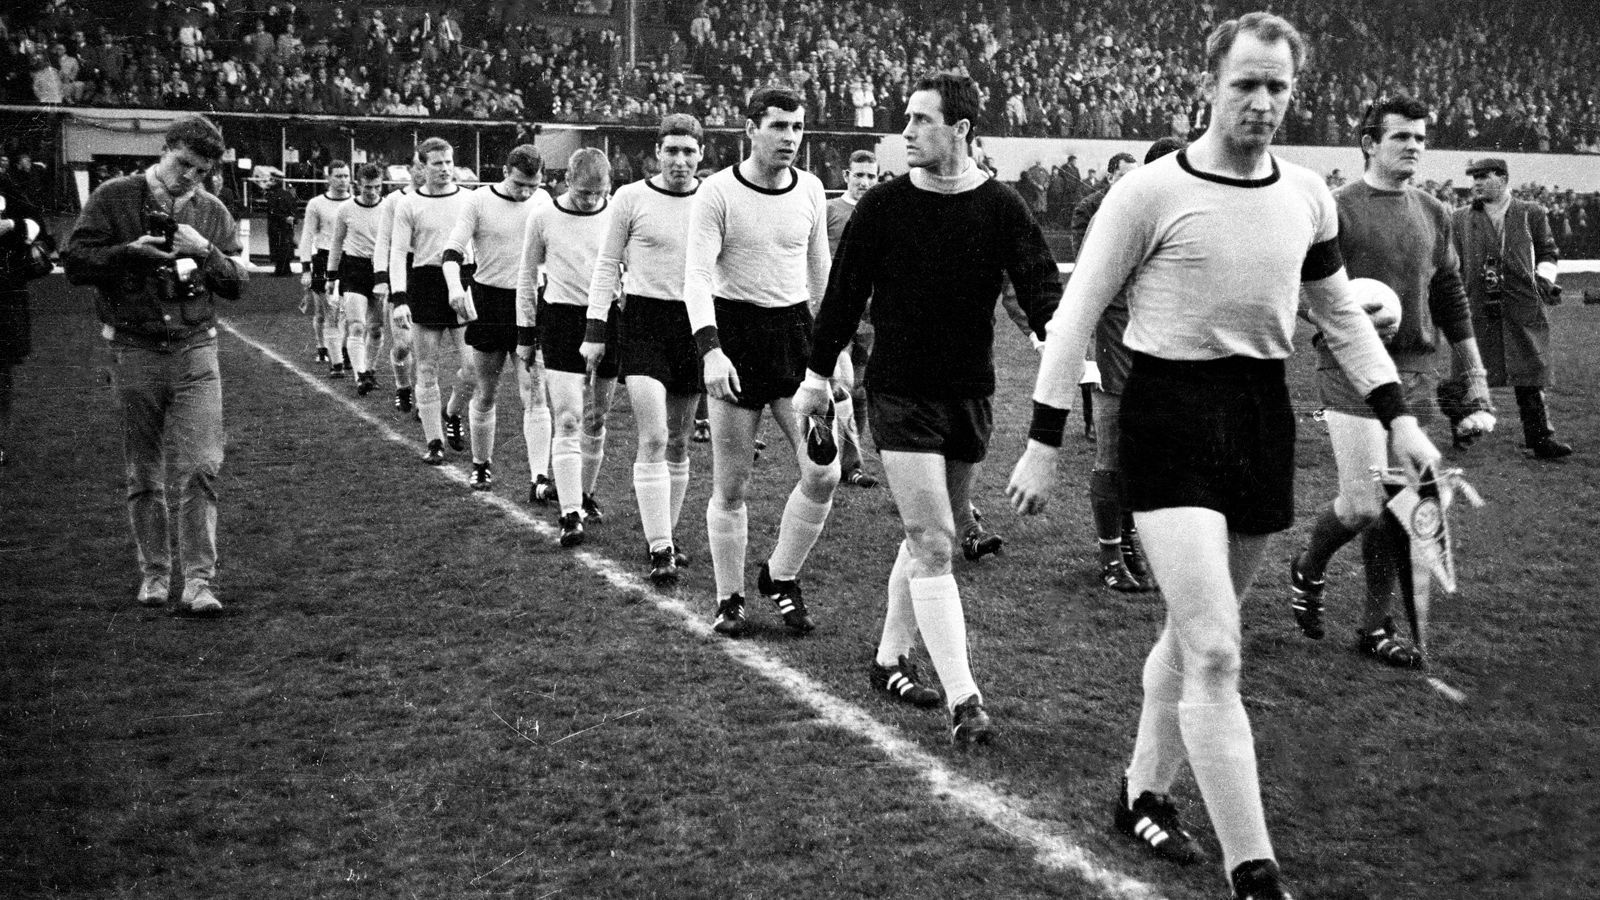 
                <strong>1966 Europapokalfinale</strong><br>
                Seinen größten Erfolg als Spieler erlebte Assauer am 5. Mai 1966, als er mit Borussia Dortmund im Endspiel um den Europapokal der Pokalsieger auflief und mit 2:1 gegen den FC Liverpool gewann – es war der erste Europapokalsieg einer deutschen Mannschaft. Bereits ein Jahr zuvor hatte Borussia Dortmund den DFB-Pokal gewonnen.  
              